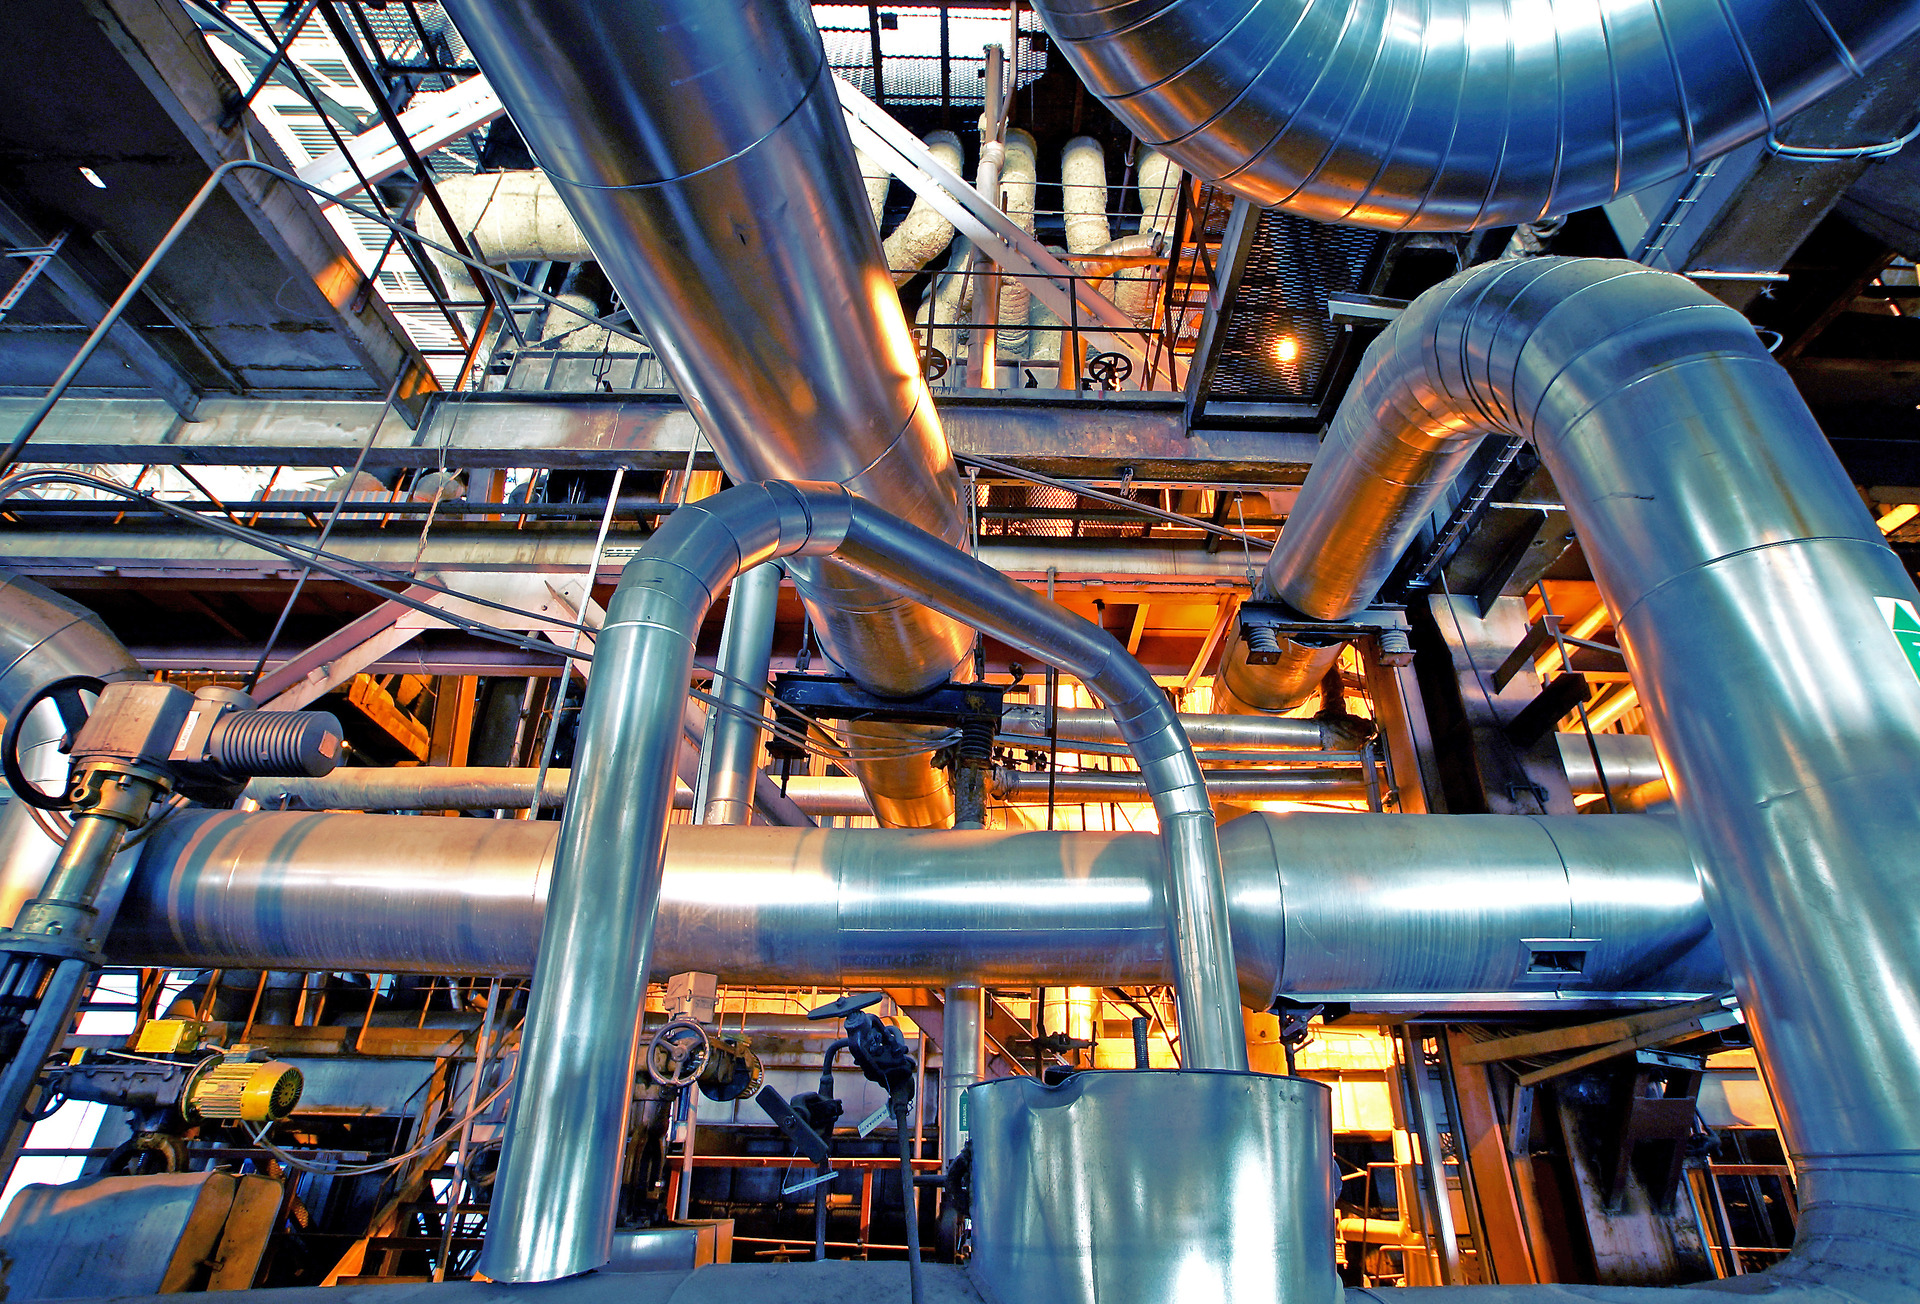 Geräte, Kabel und Rohrleitungen, wie sie in einem modernen Industriekraftwerk zu finden sind.